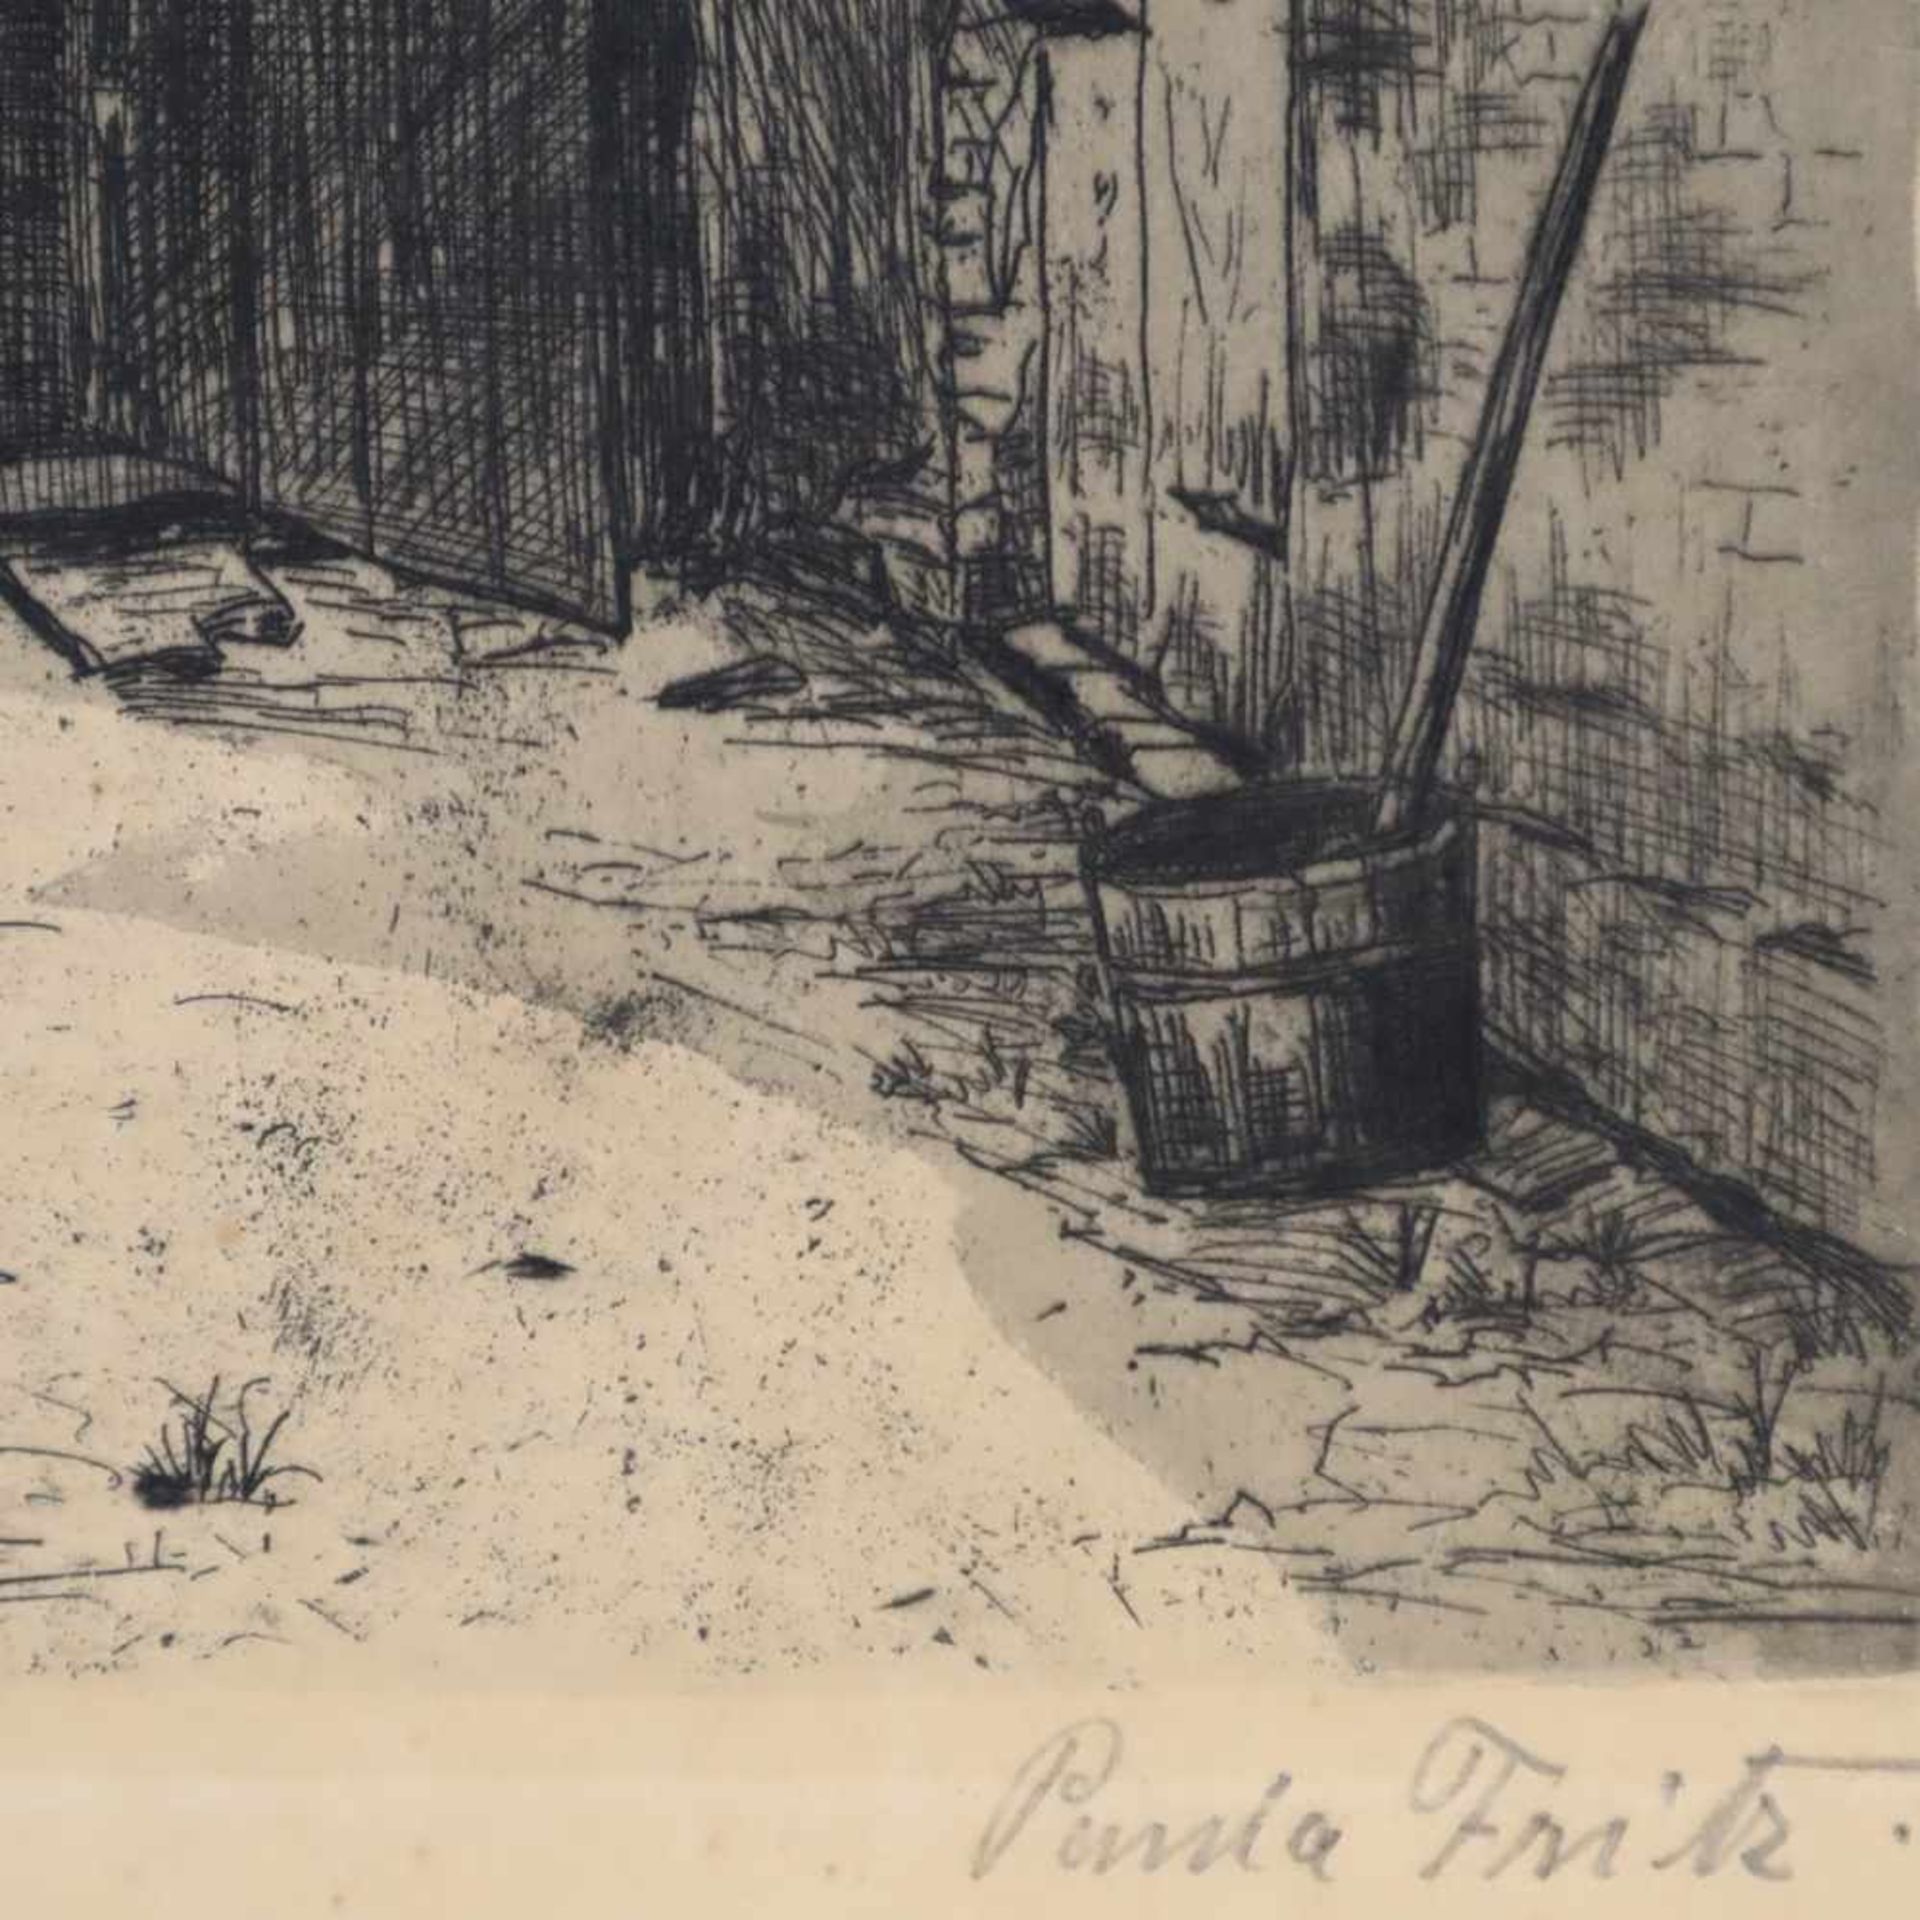 Fritz, Paula - Bauernhof, Radierung auf Papier, u. re. sign., ca. 16,5 x 19 cm, ungerahmt - - -18.50 - Bild 4 aus 4